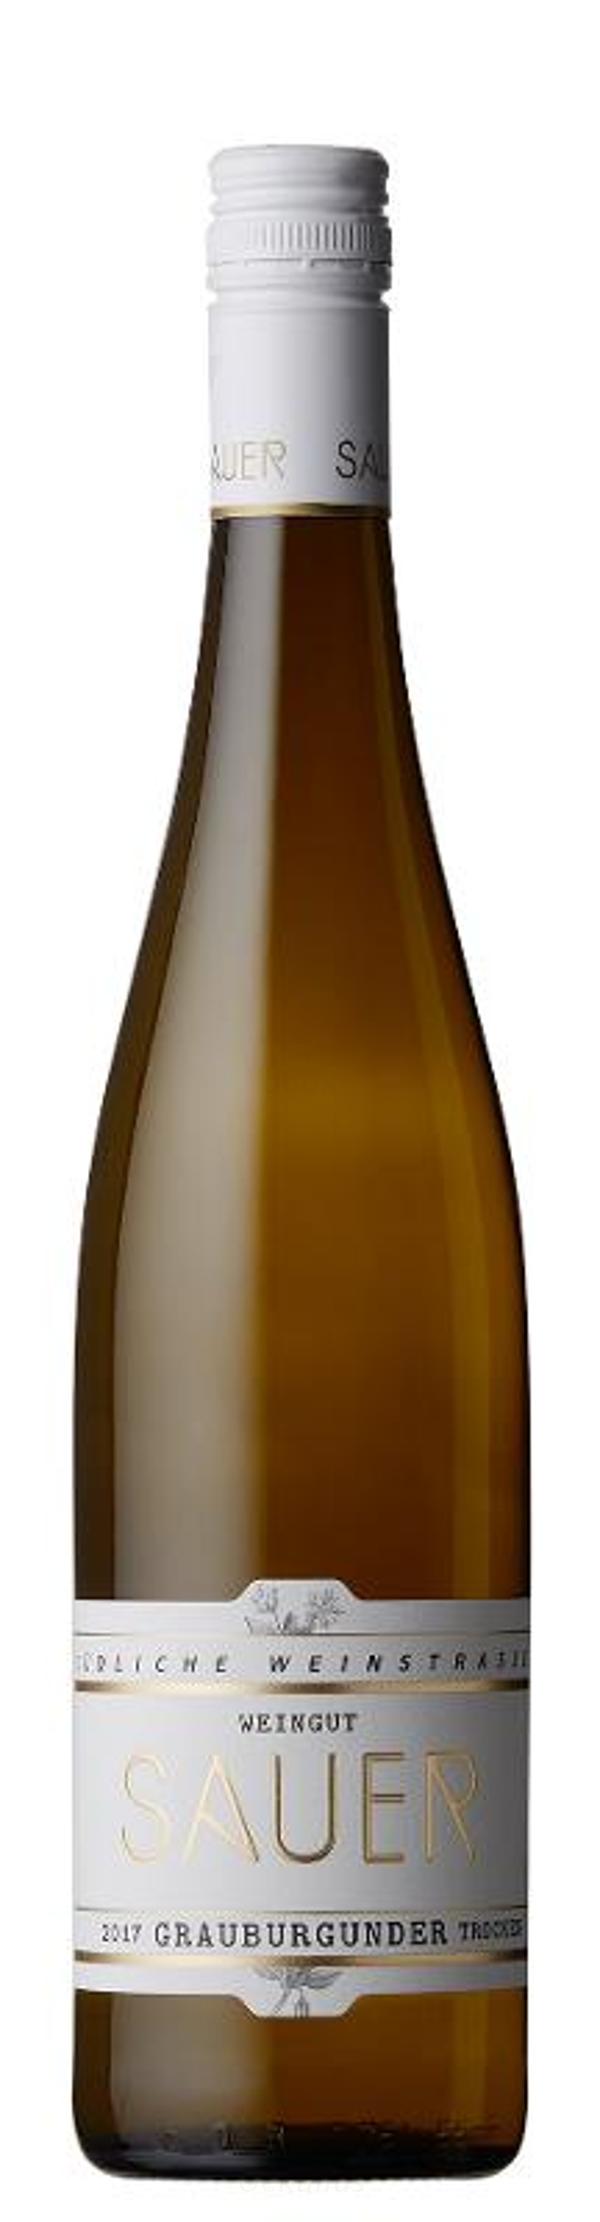 Produktfoto zu Grauburgunder Weingut Sauer